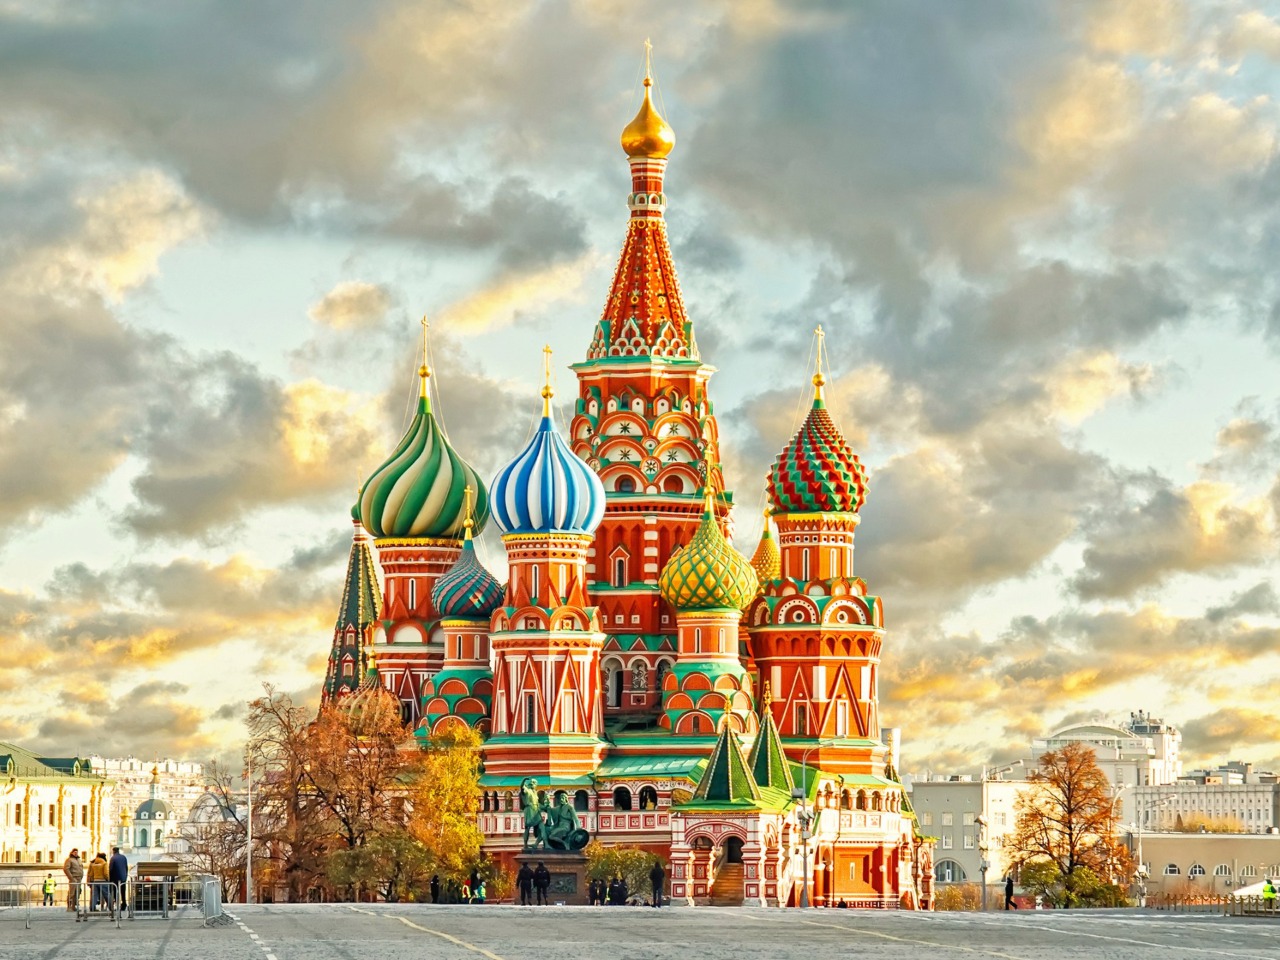 Откуда пошла земля Московская? | Цена 7500₽, отзывы, описание экскурсии